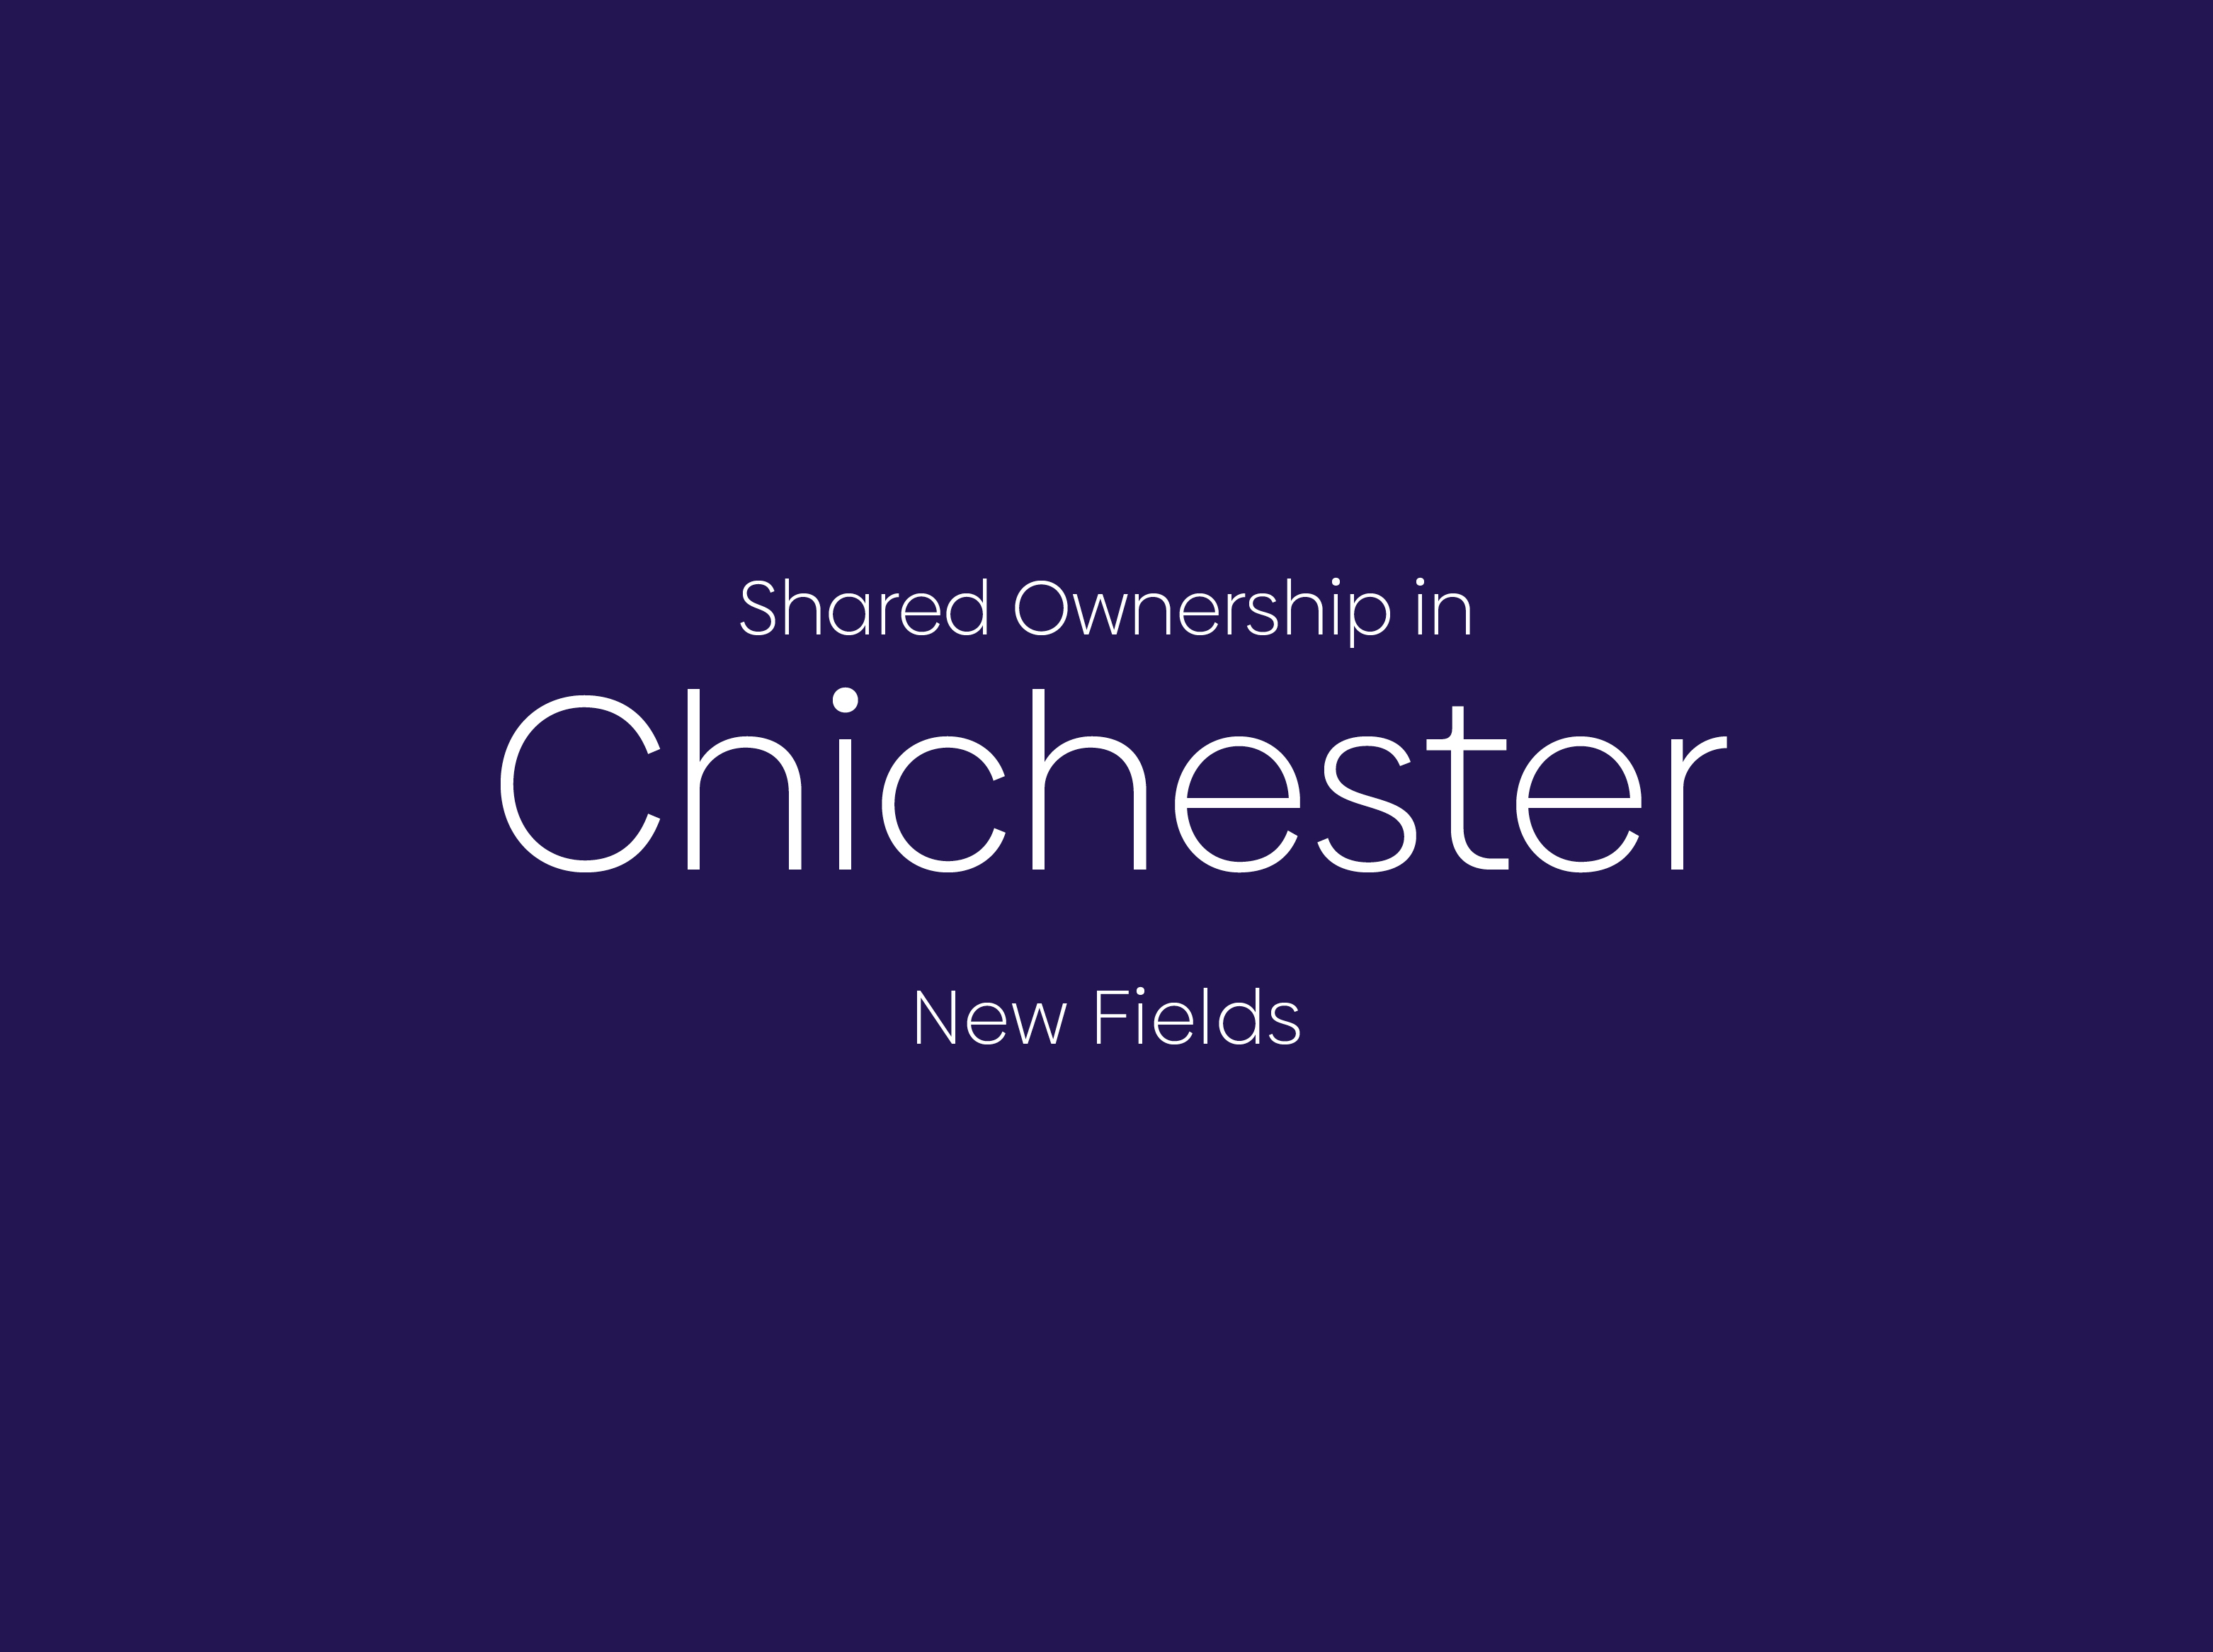 New Fields, Chichester